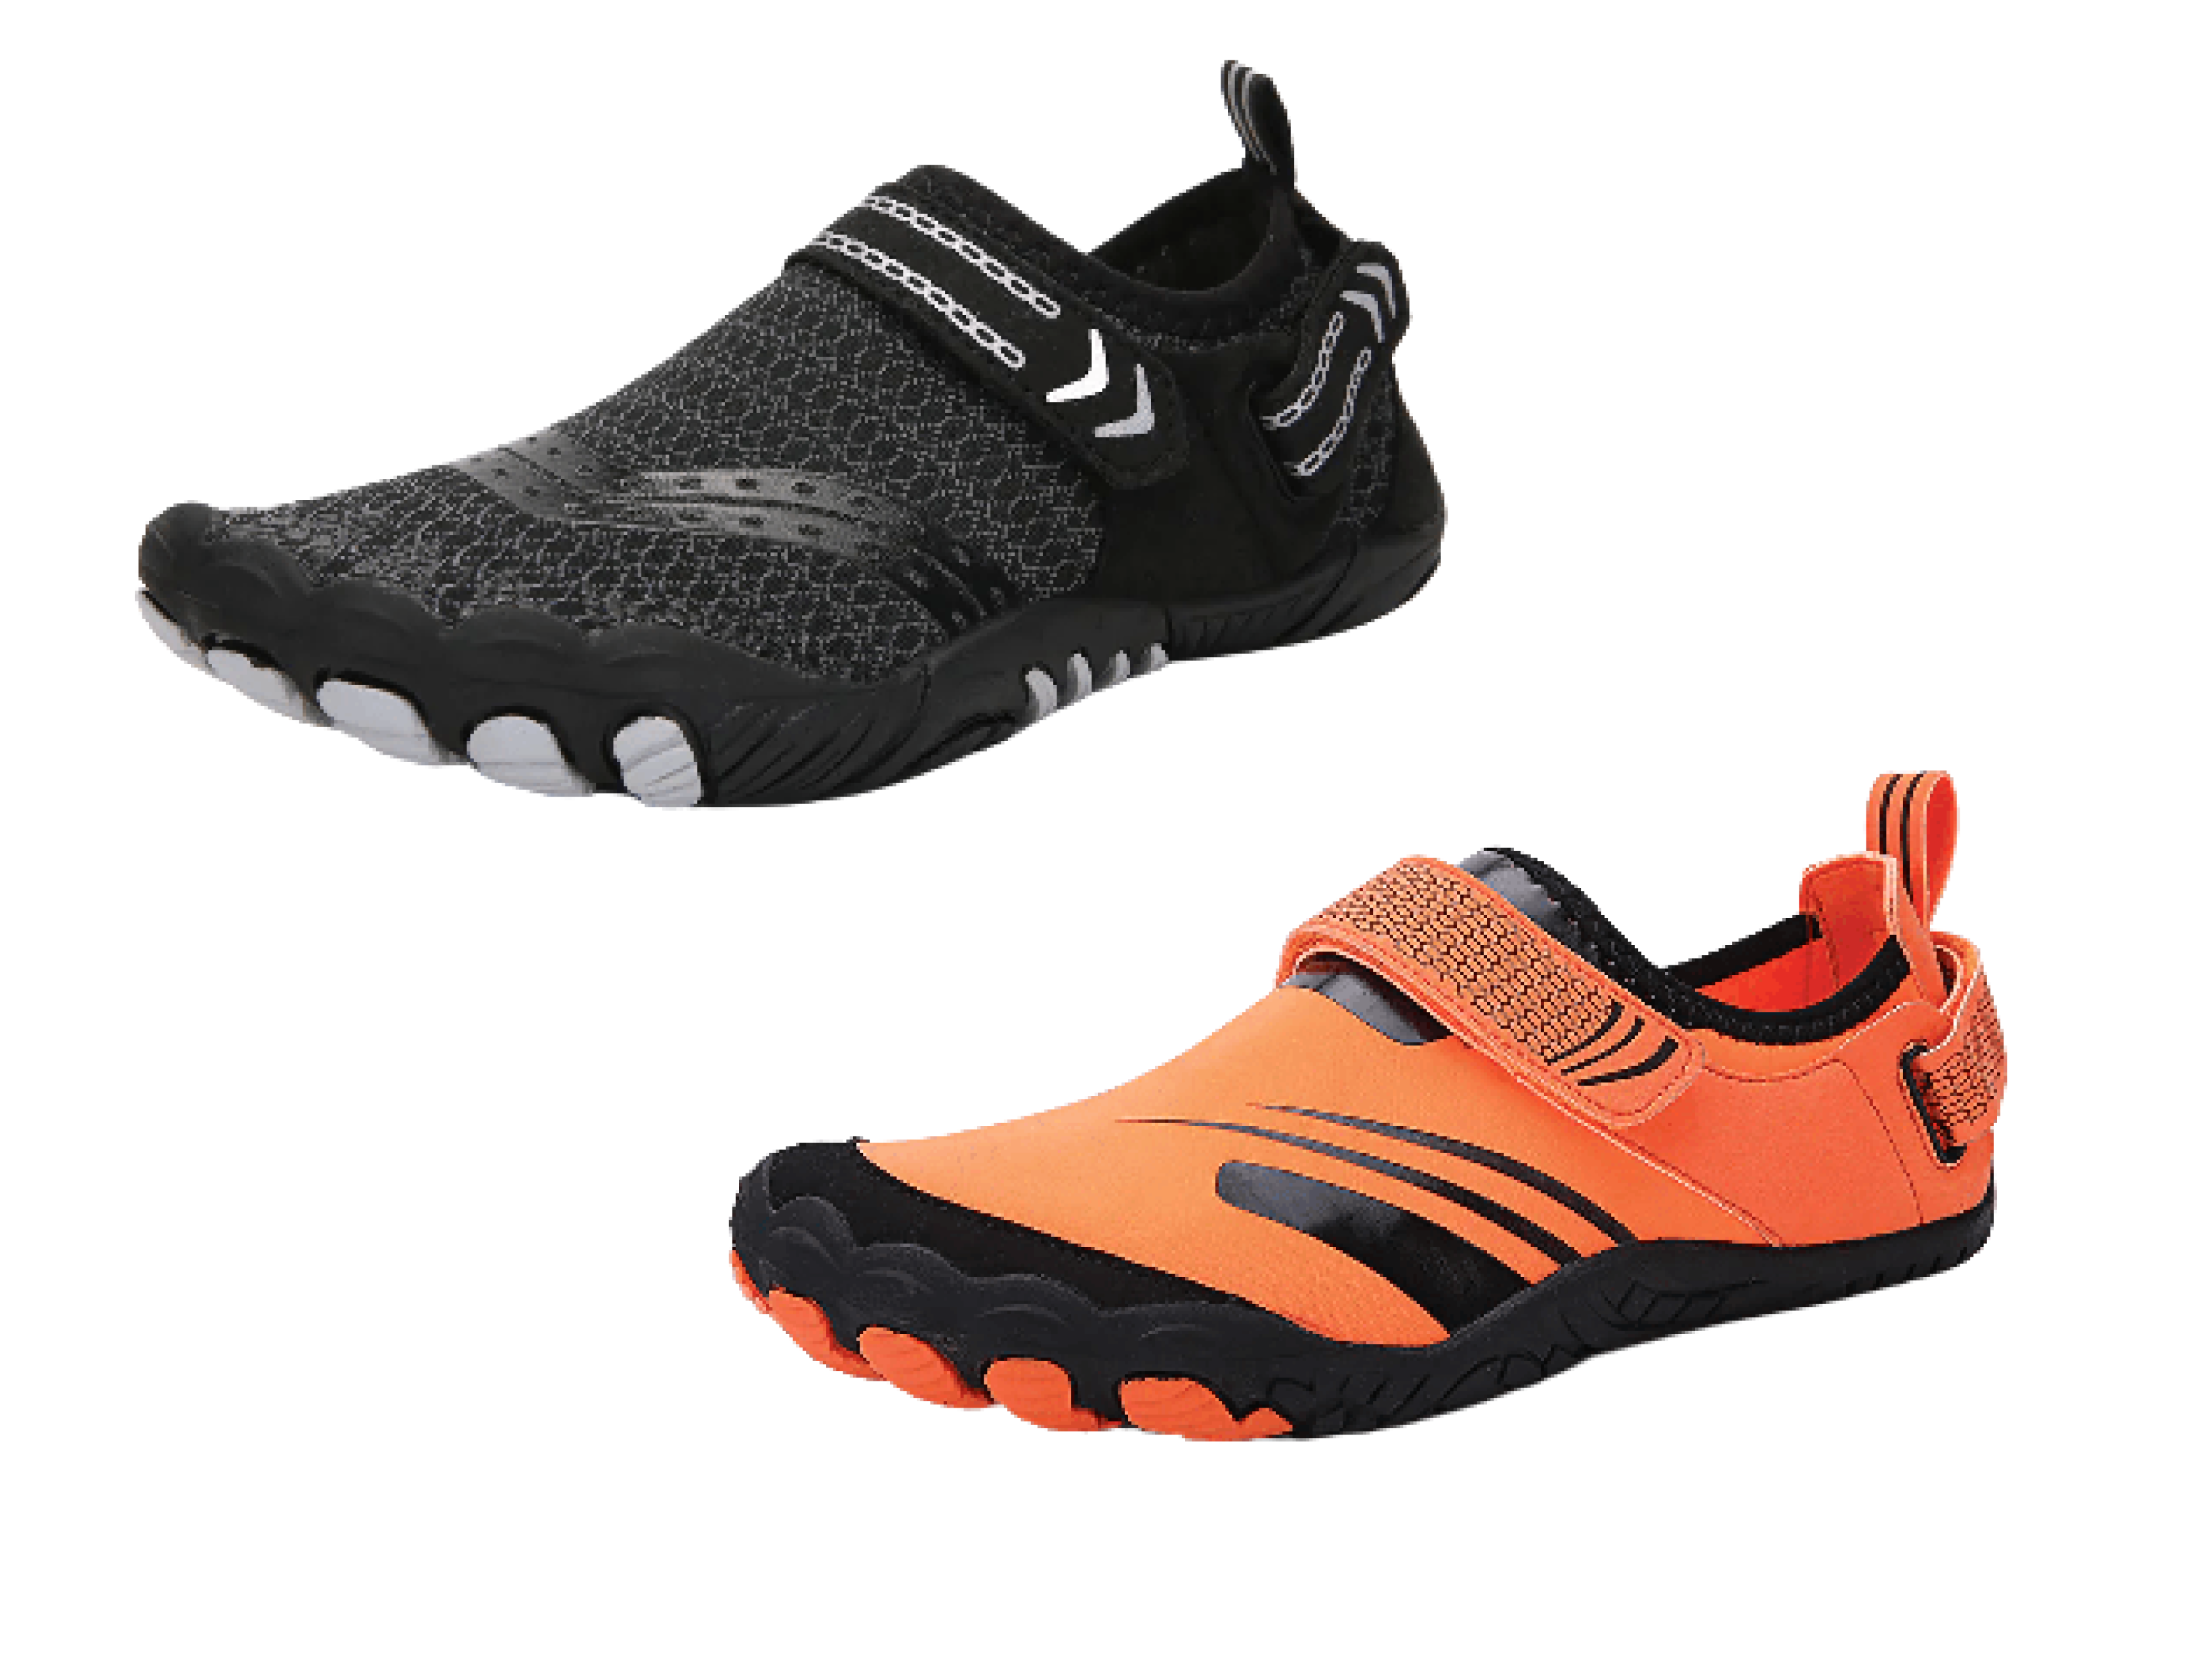 Buy Best & Comfort Fishing Shoes online